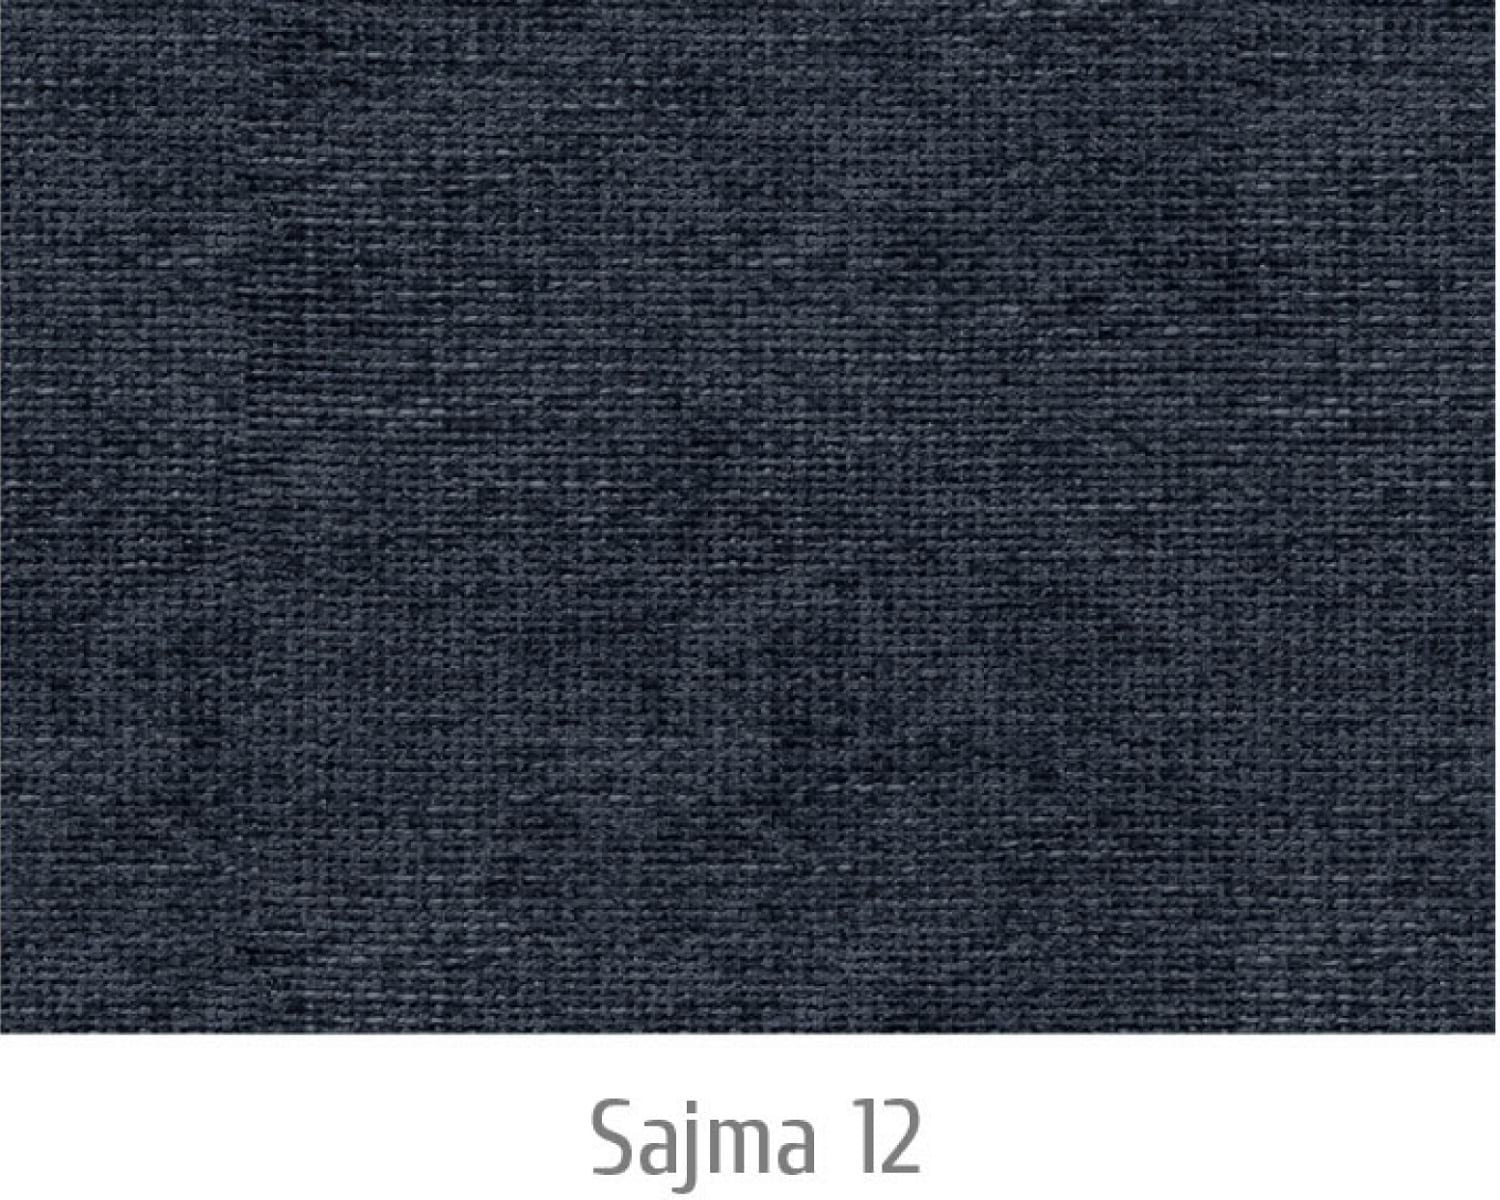 Sajma12